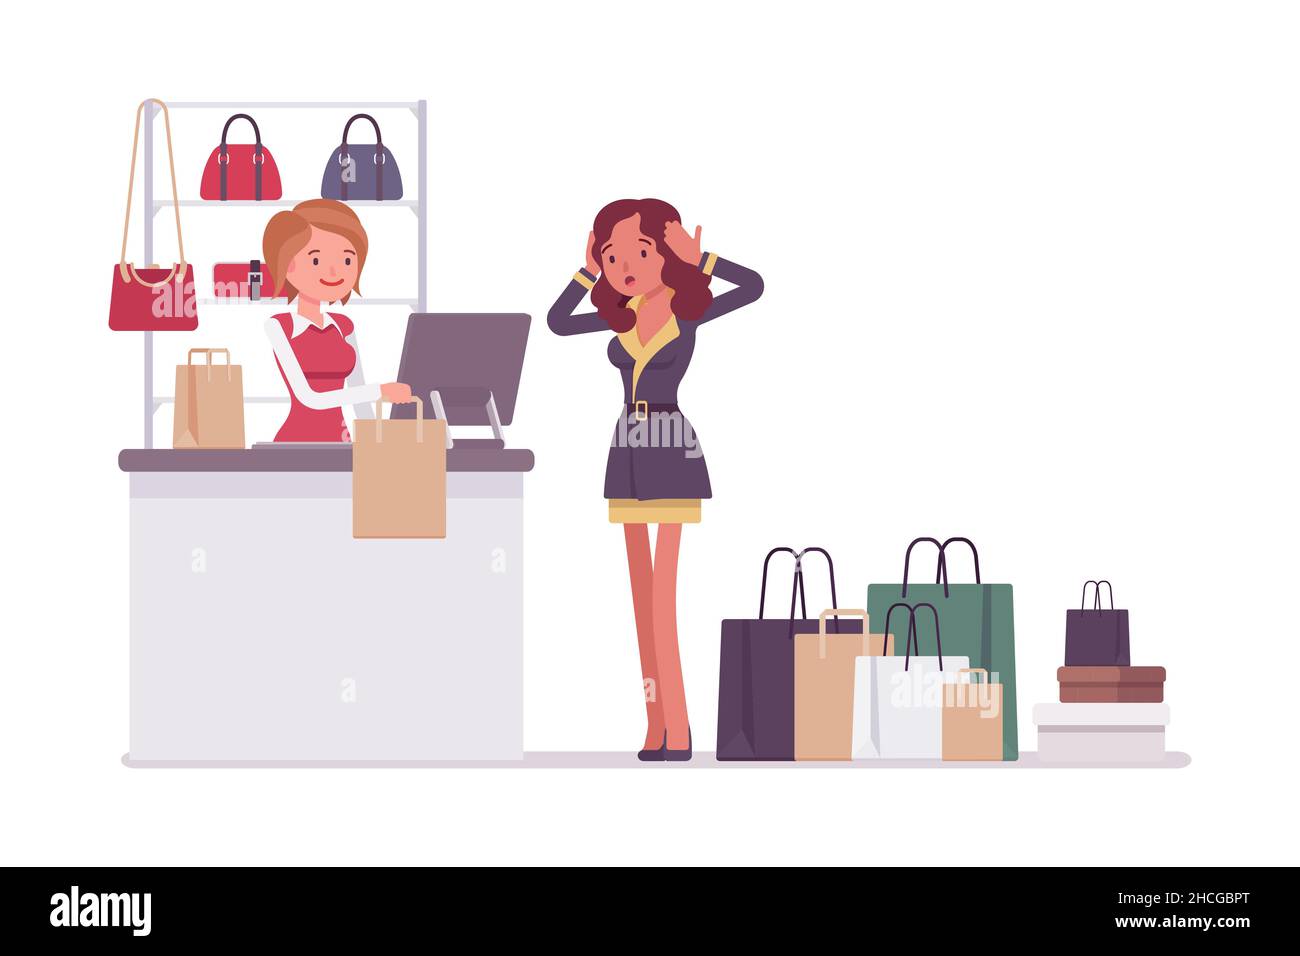 Frau überraschen mit den Kosten für ihren Einkauf. Menschen Interaktion im Einkaufszentrum mit einer Menge Einkaufstaschen. Isoliertes Zeichen Stock Vektor